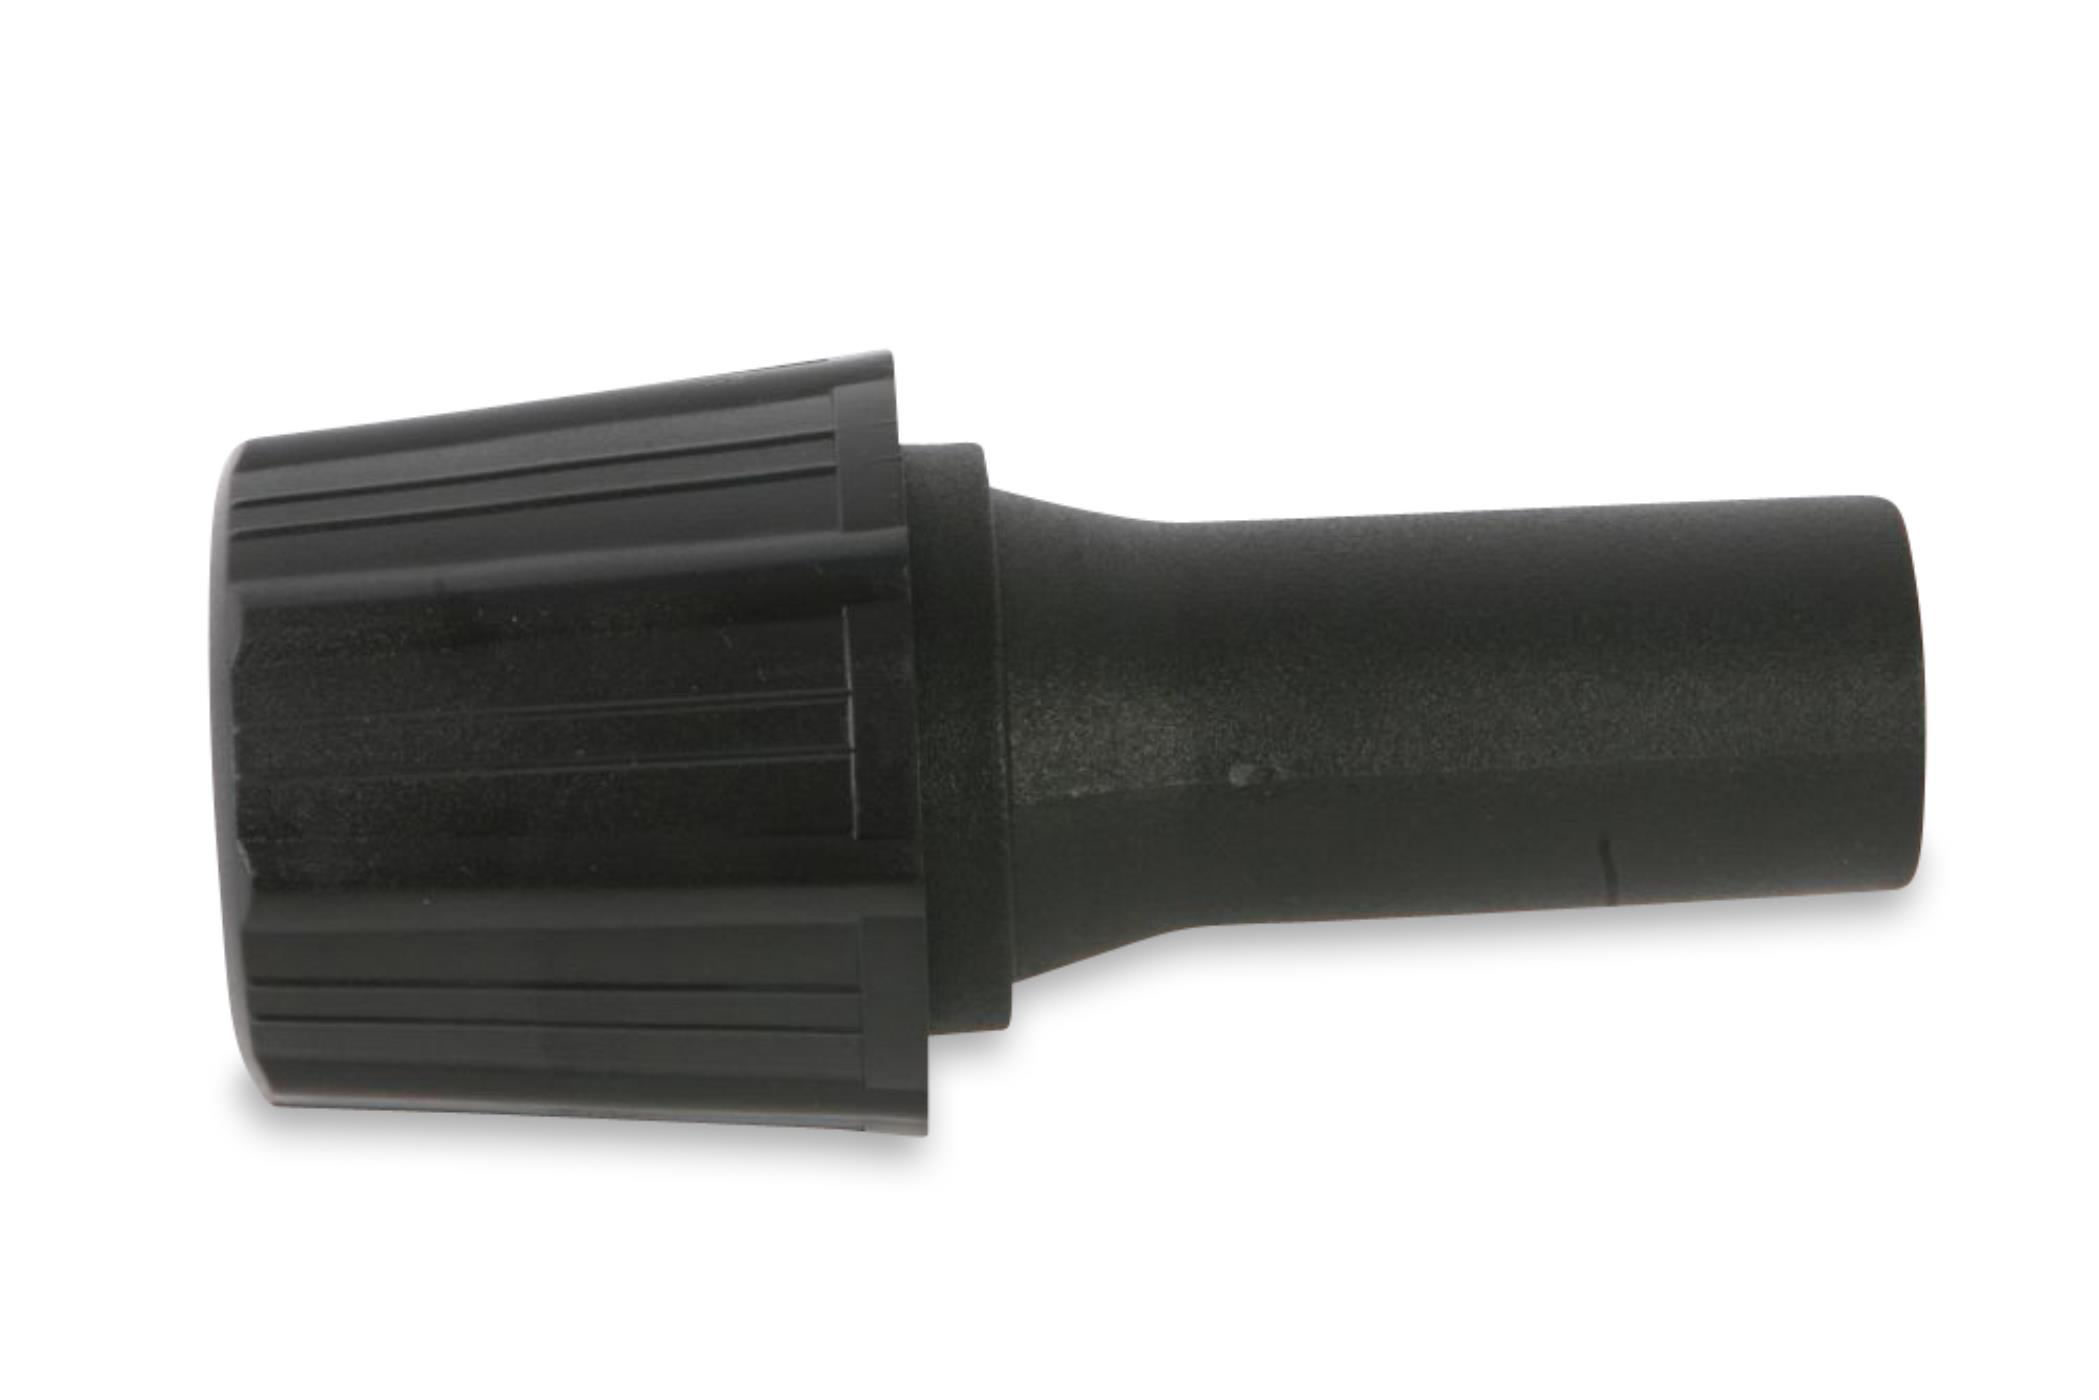 STAUBSAUGERLADEN.DE Universal Adapter für 30-37 auf mit Staubsaugerrohr mm Staubsaugeraufsatz Düsen 35mm